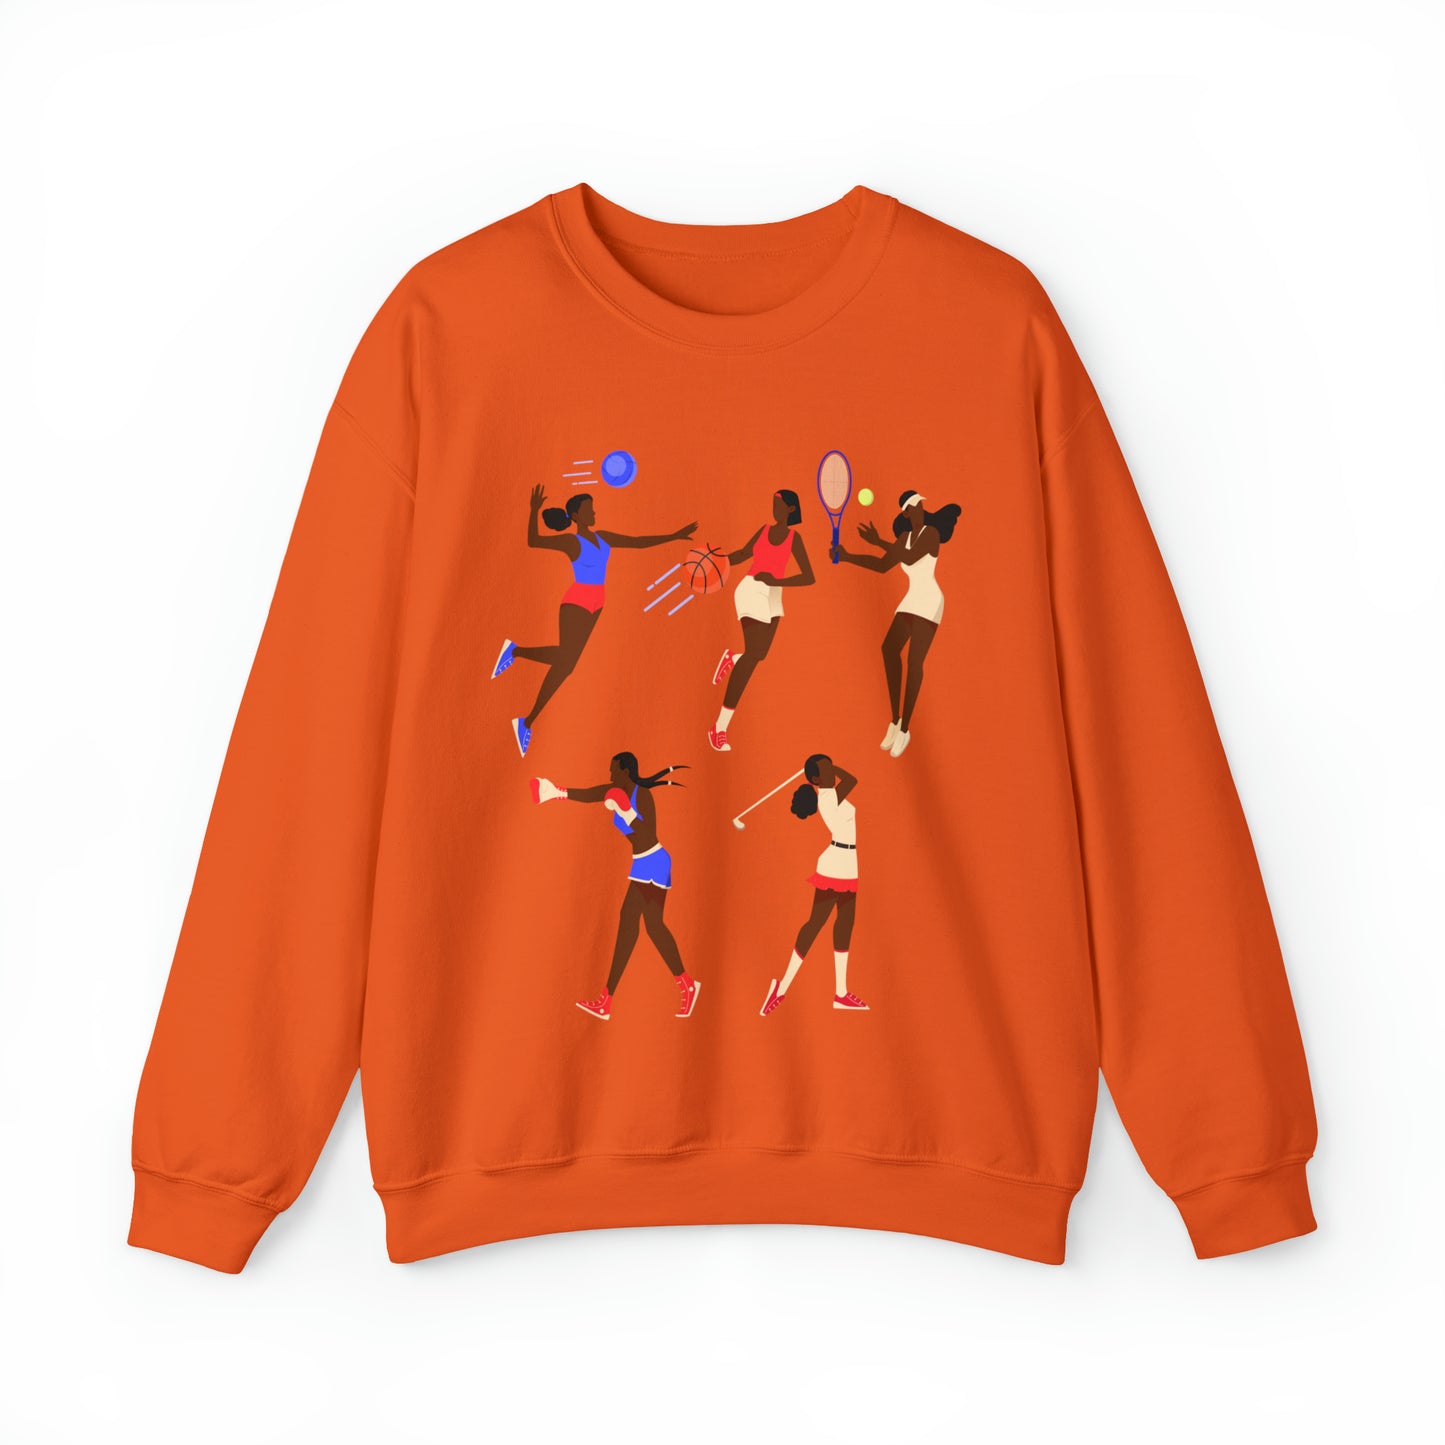 Women in Sports Sweatshirt